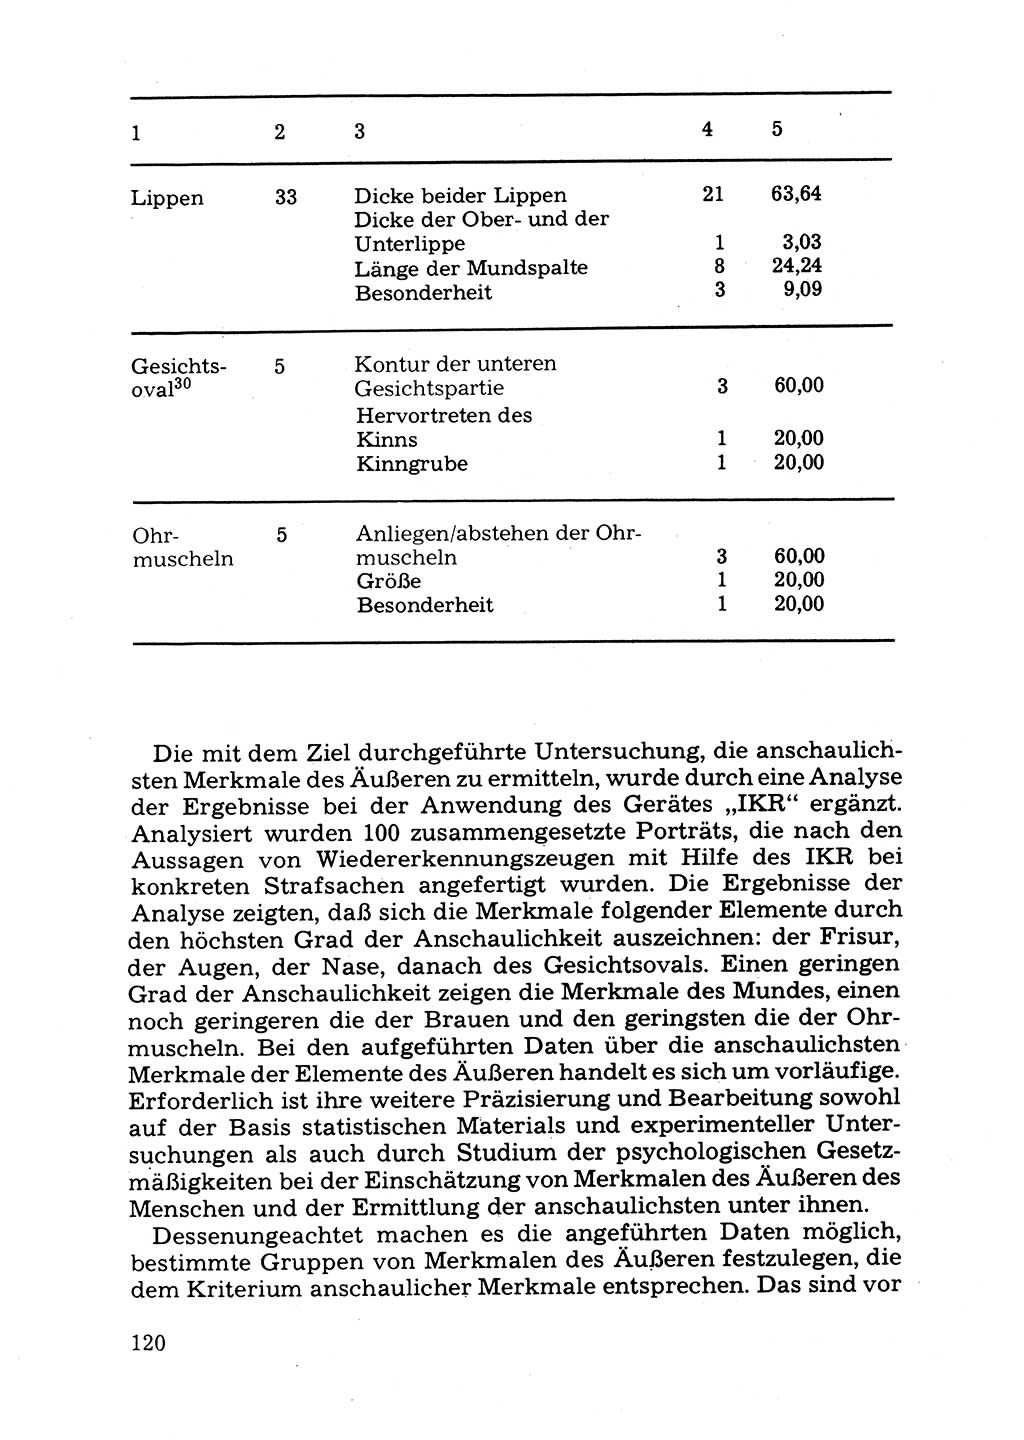 Das subjektive Porträt [Deutsche Demokratische Republik (DDR)] 1981, Seite 120 (Subj. Port. DDR 1981, S. 120)